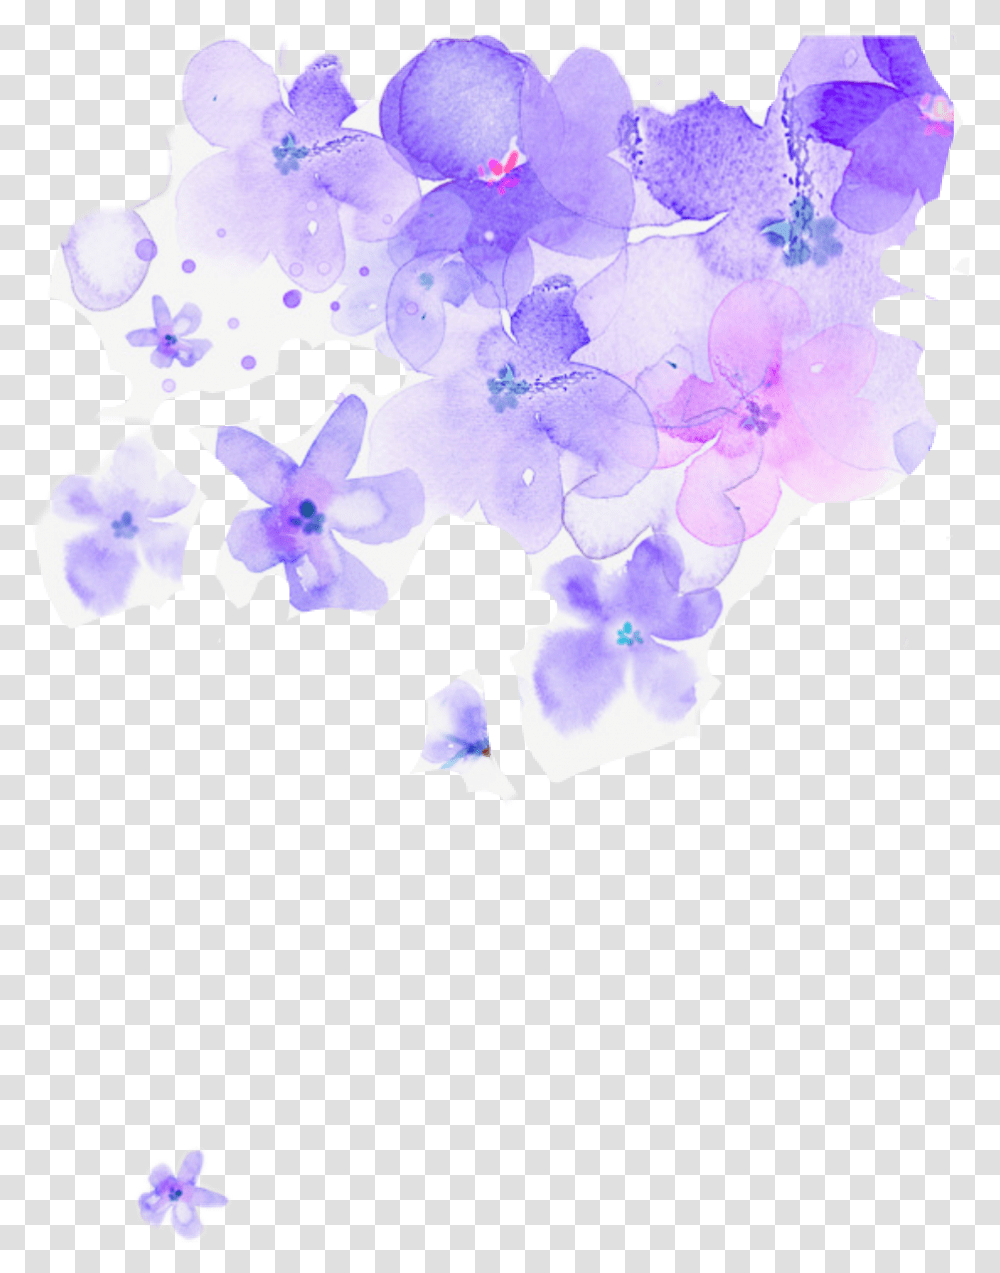 Purple Flower Watercolor Background Purple Flowers, Graphics, Art, Plant, Floral Design Transparent Png